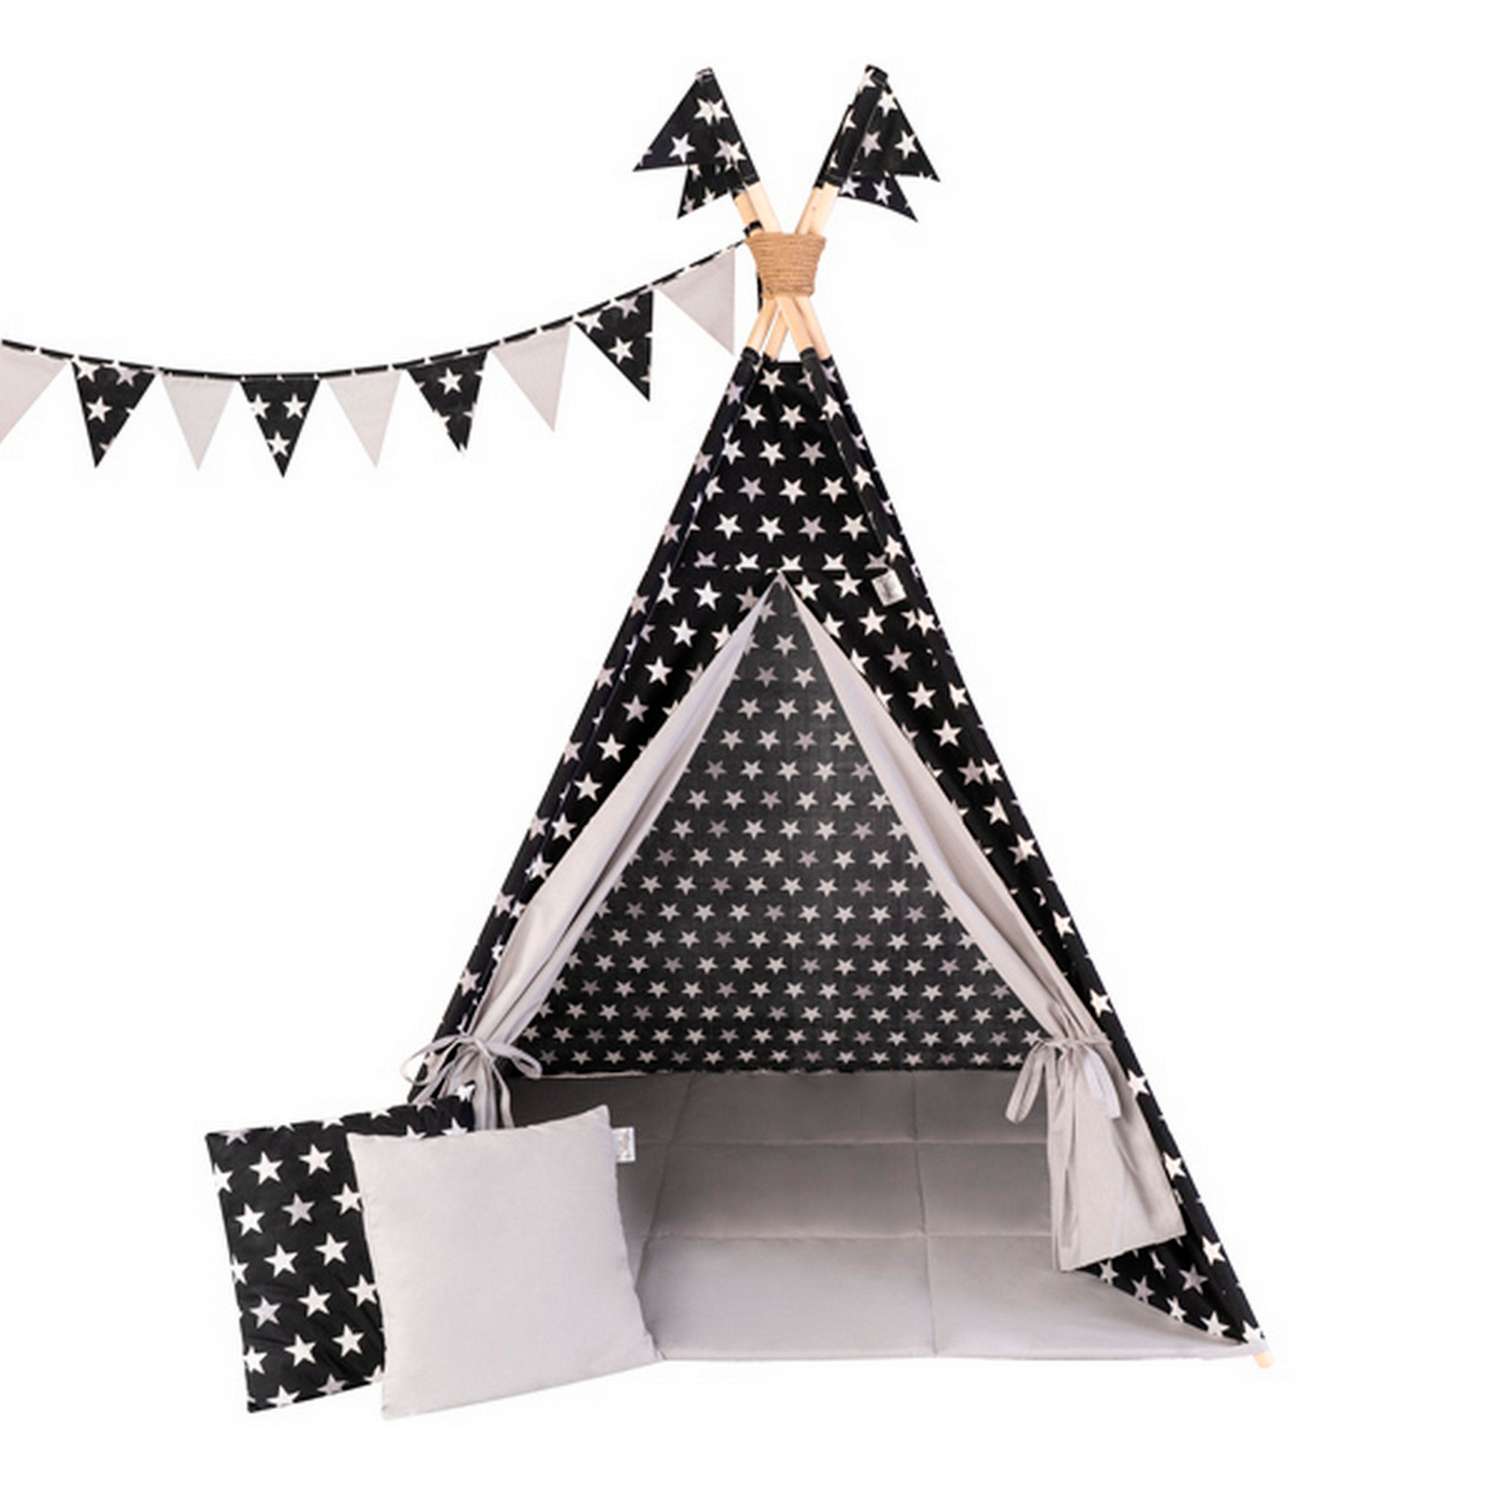 Детская игровая палатка вигвам Buklya Звезды цв. черный / серый - фото 3